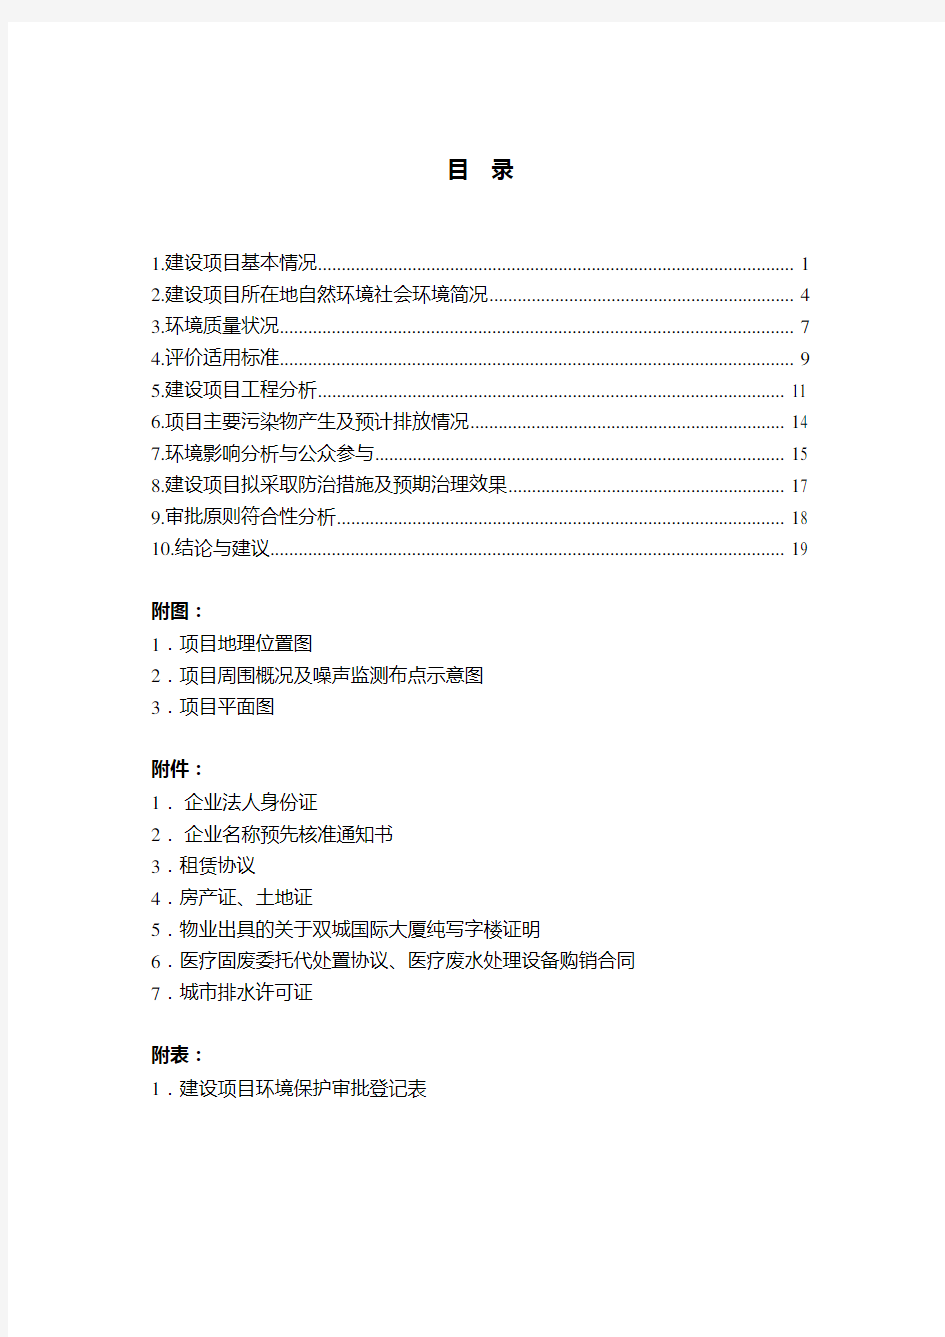 建设项目环境影响评价报告表-杭州环保局